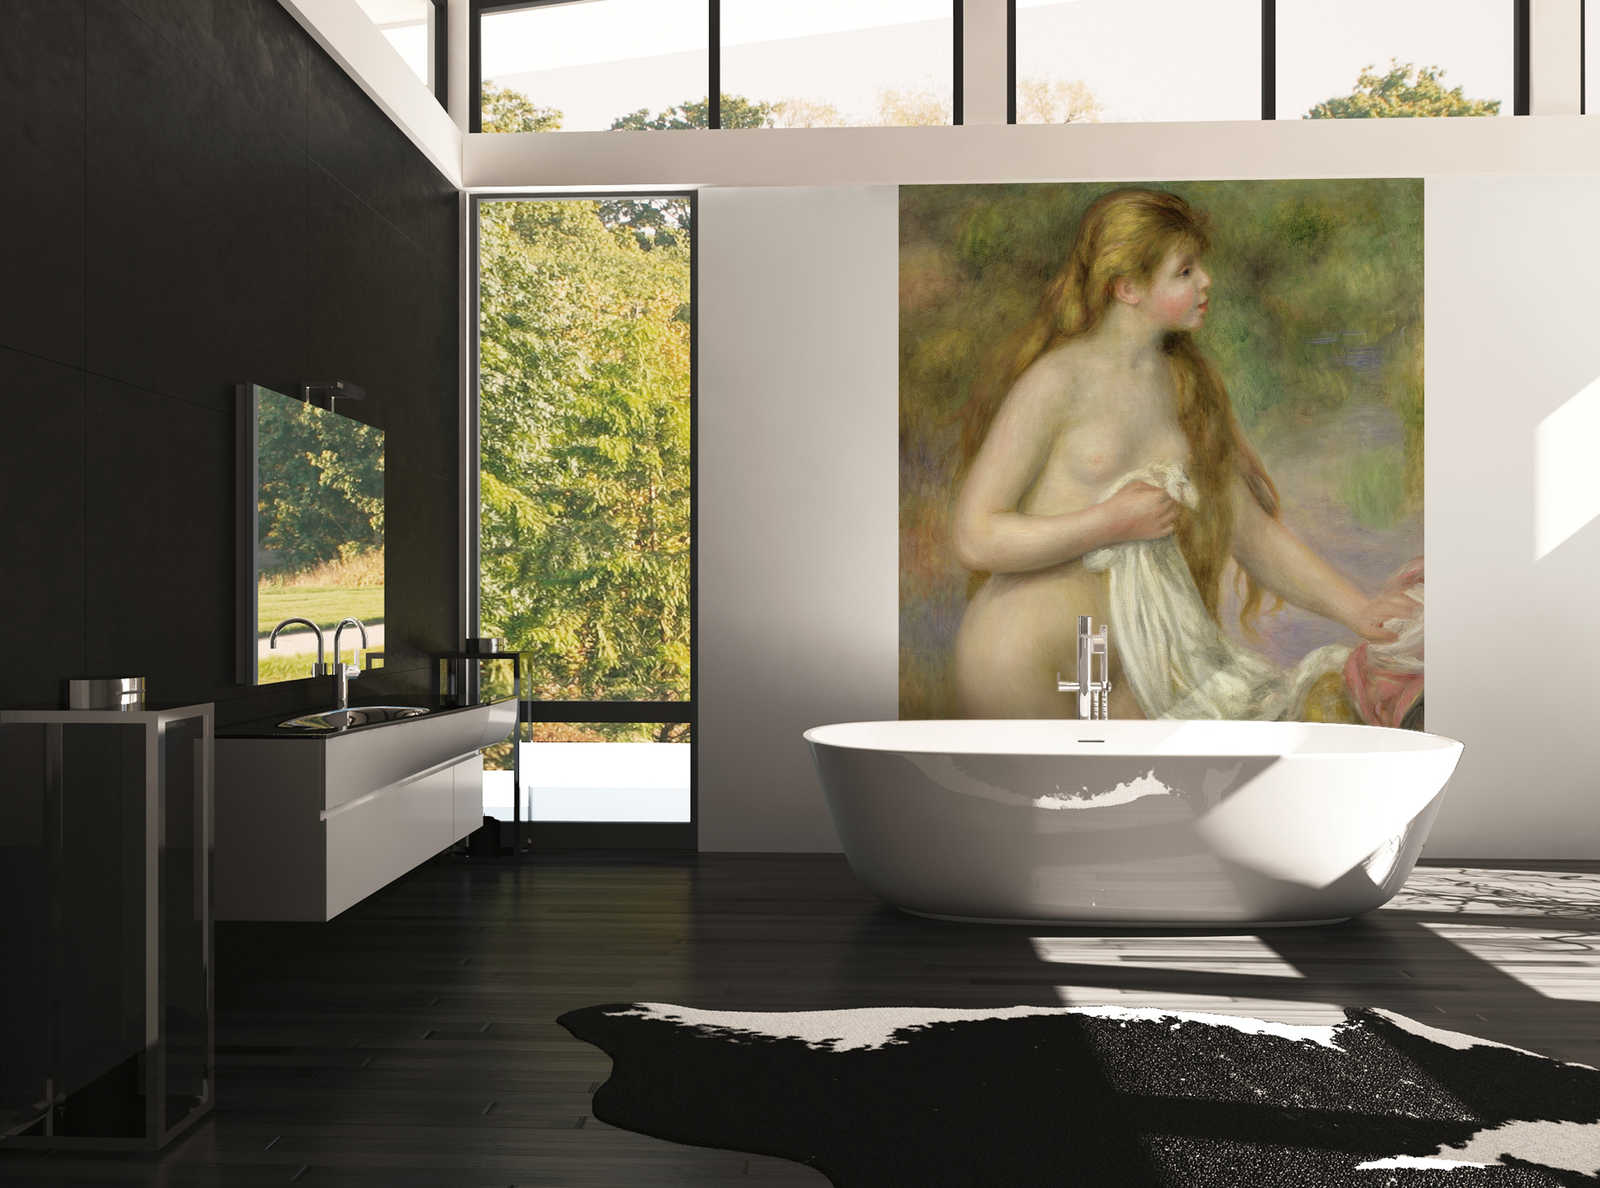             Badgasten met lang haar" muurschildering van Pierre Auguste Renoir
        